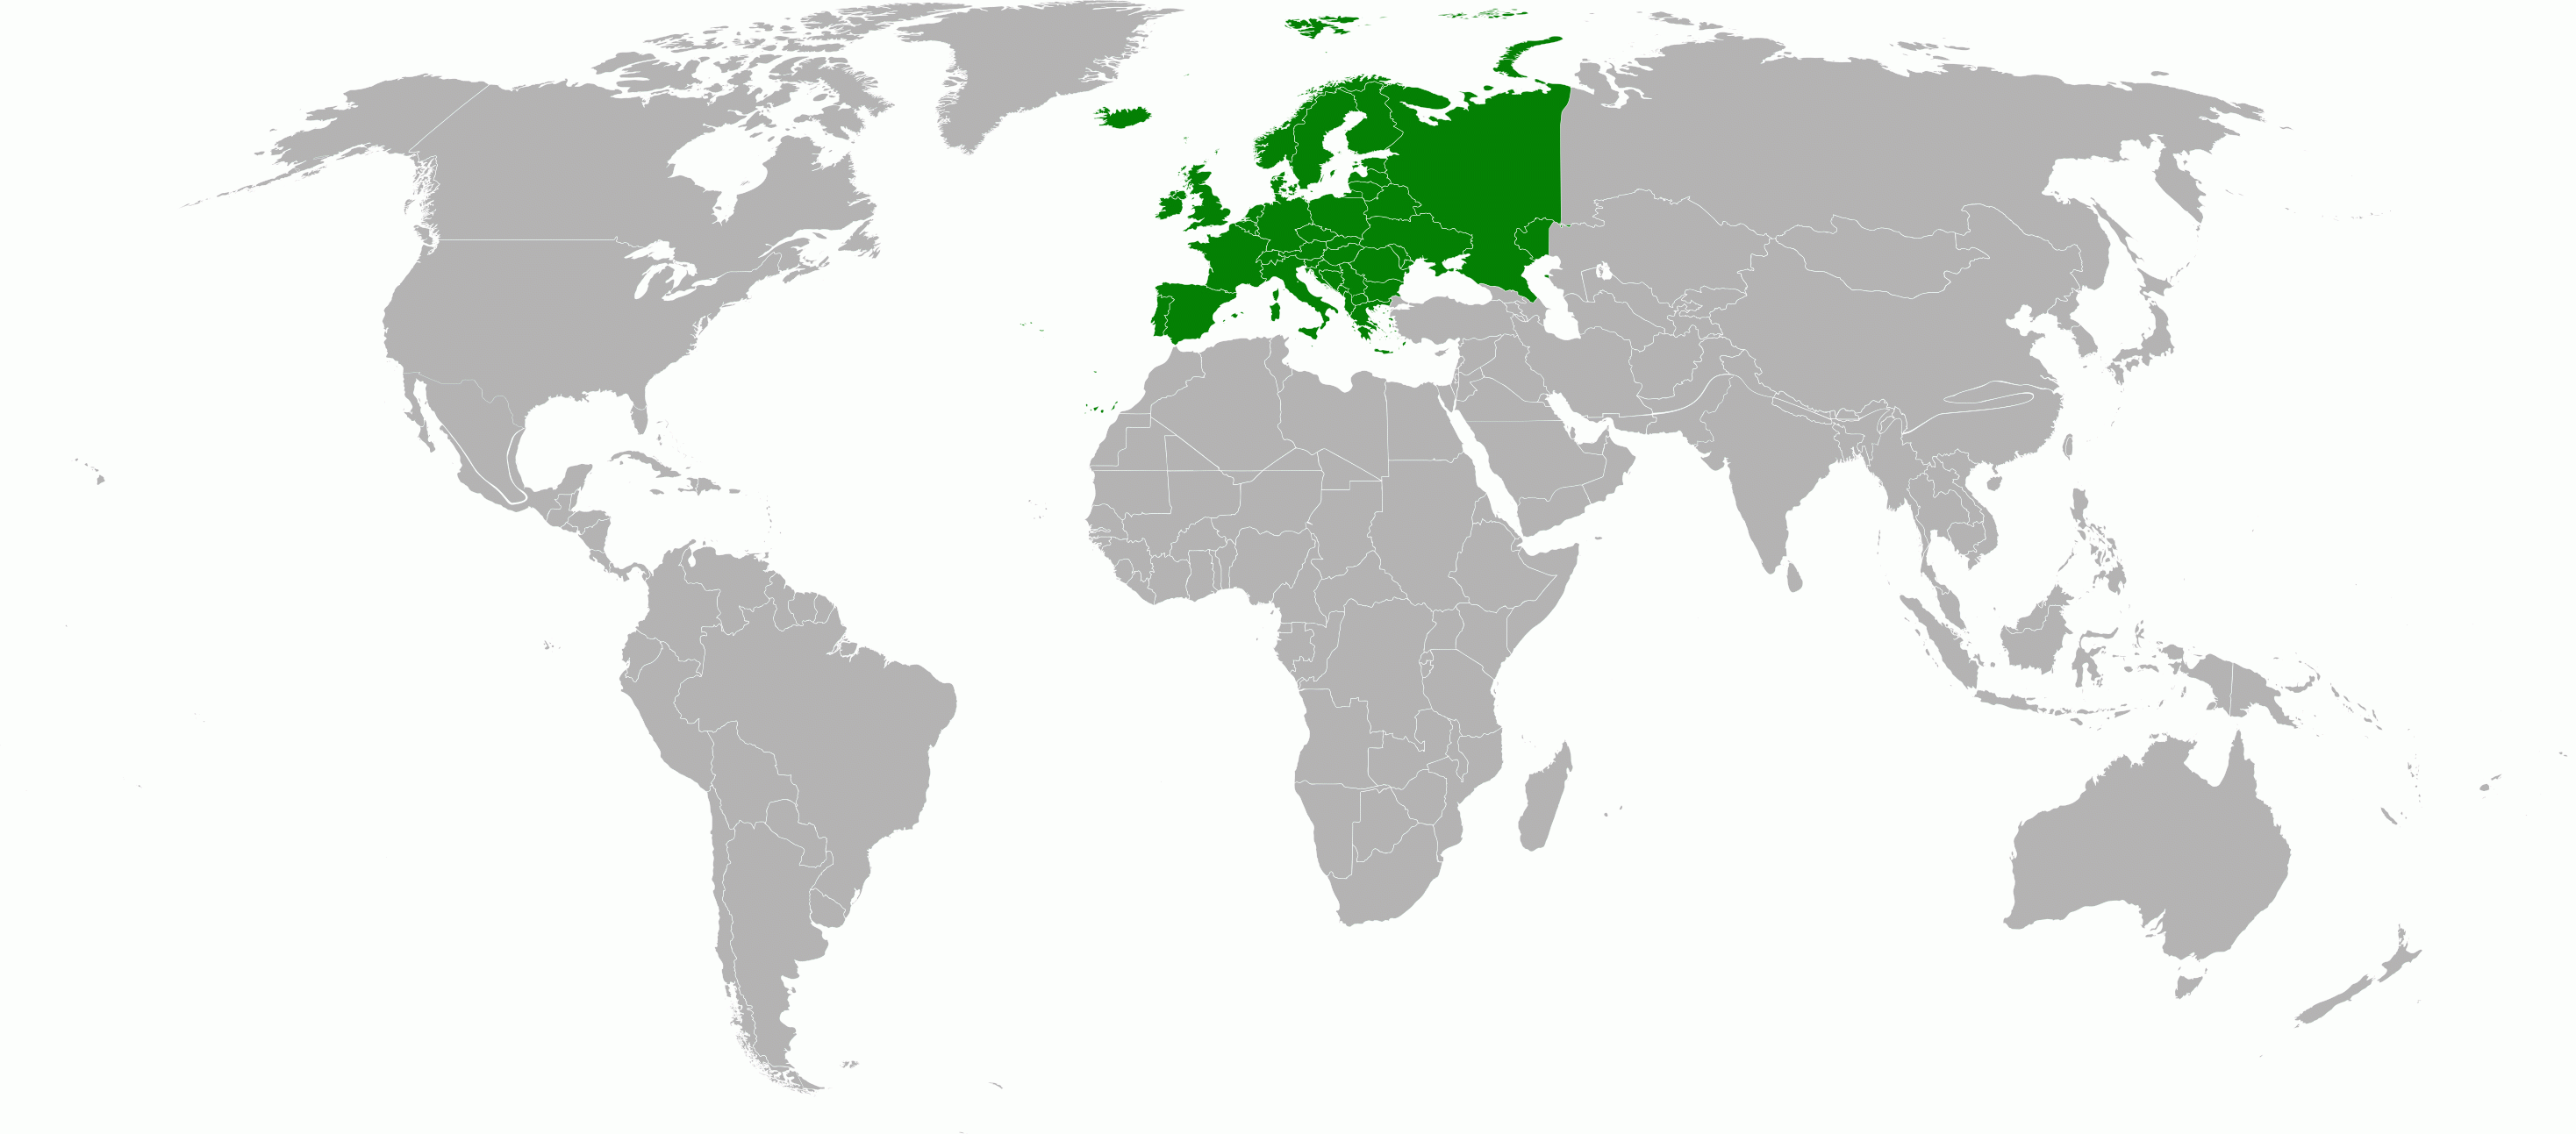 World distribution of Chrysis indigotea